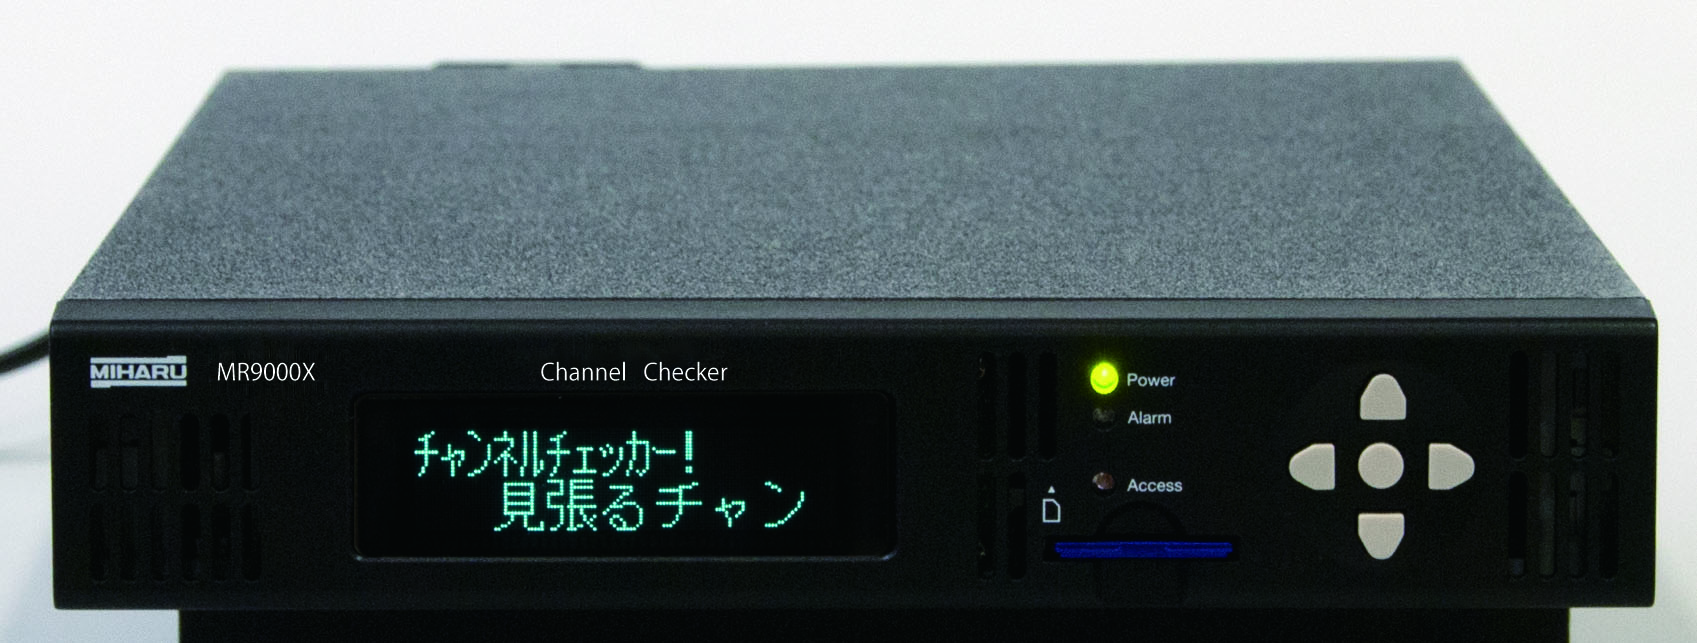 MR9000 "Miharu Chan" digital broadcast signal